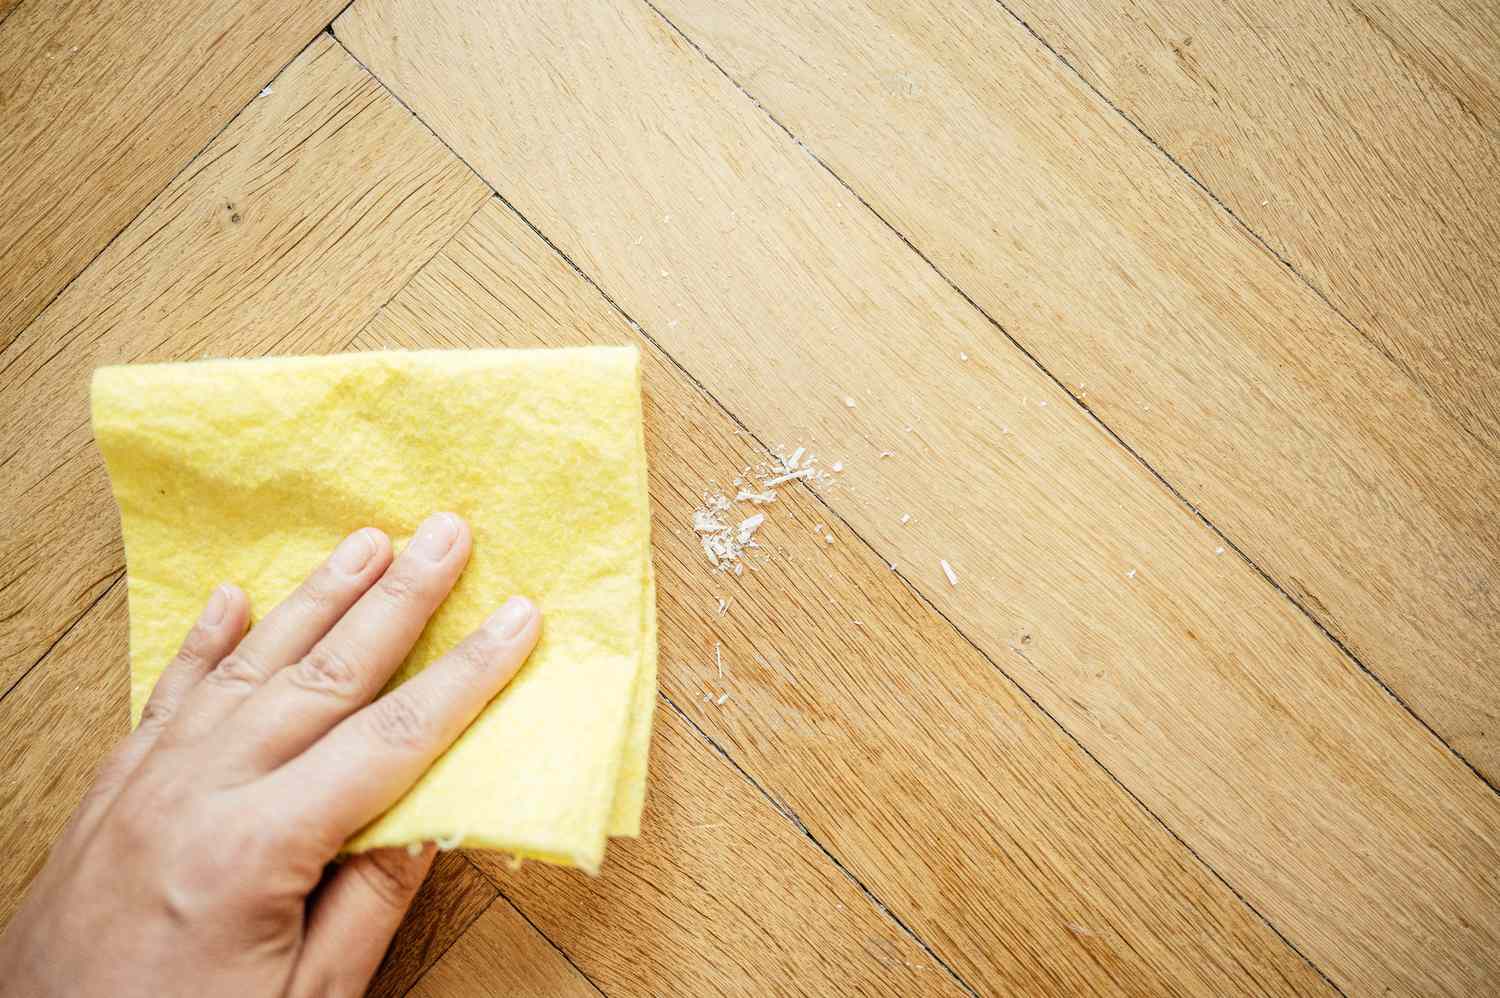 How To Clean Wax Off Floor